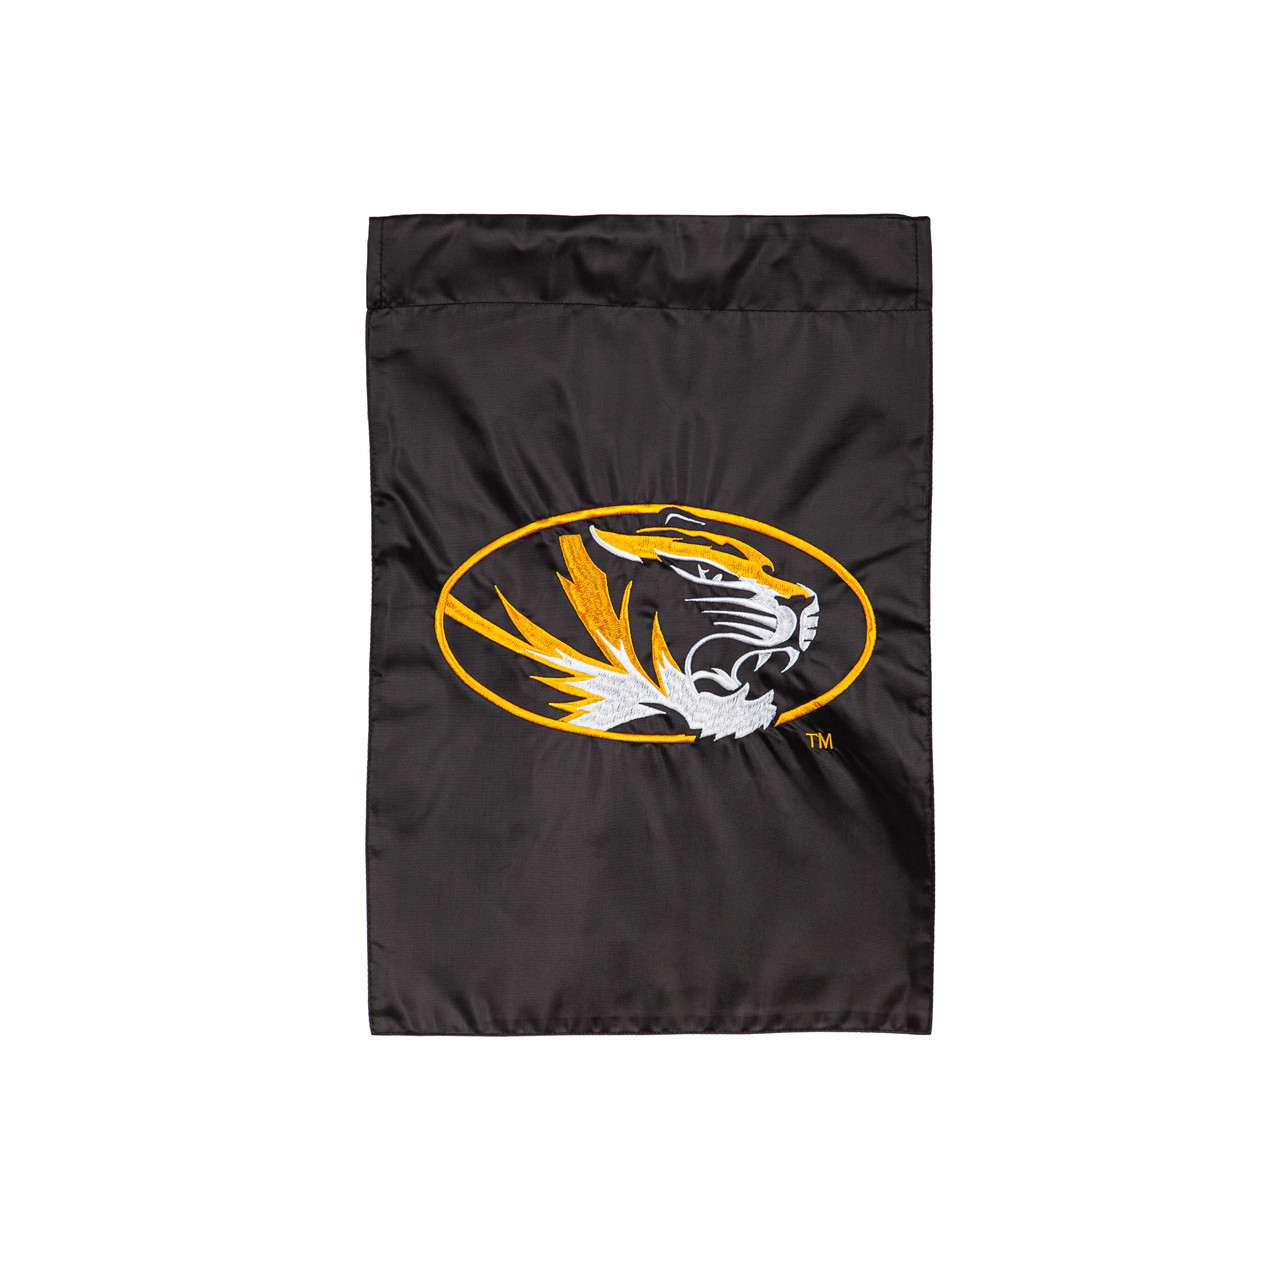 University of Missouri (logo) Appliqued Garden Flag - FlagCenter.com